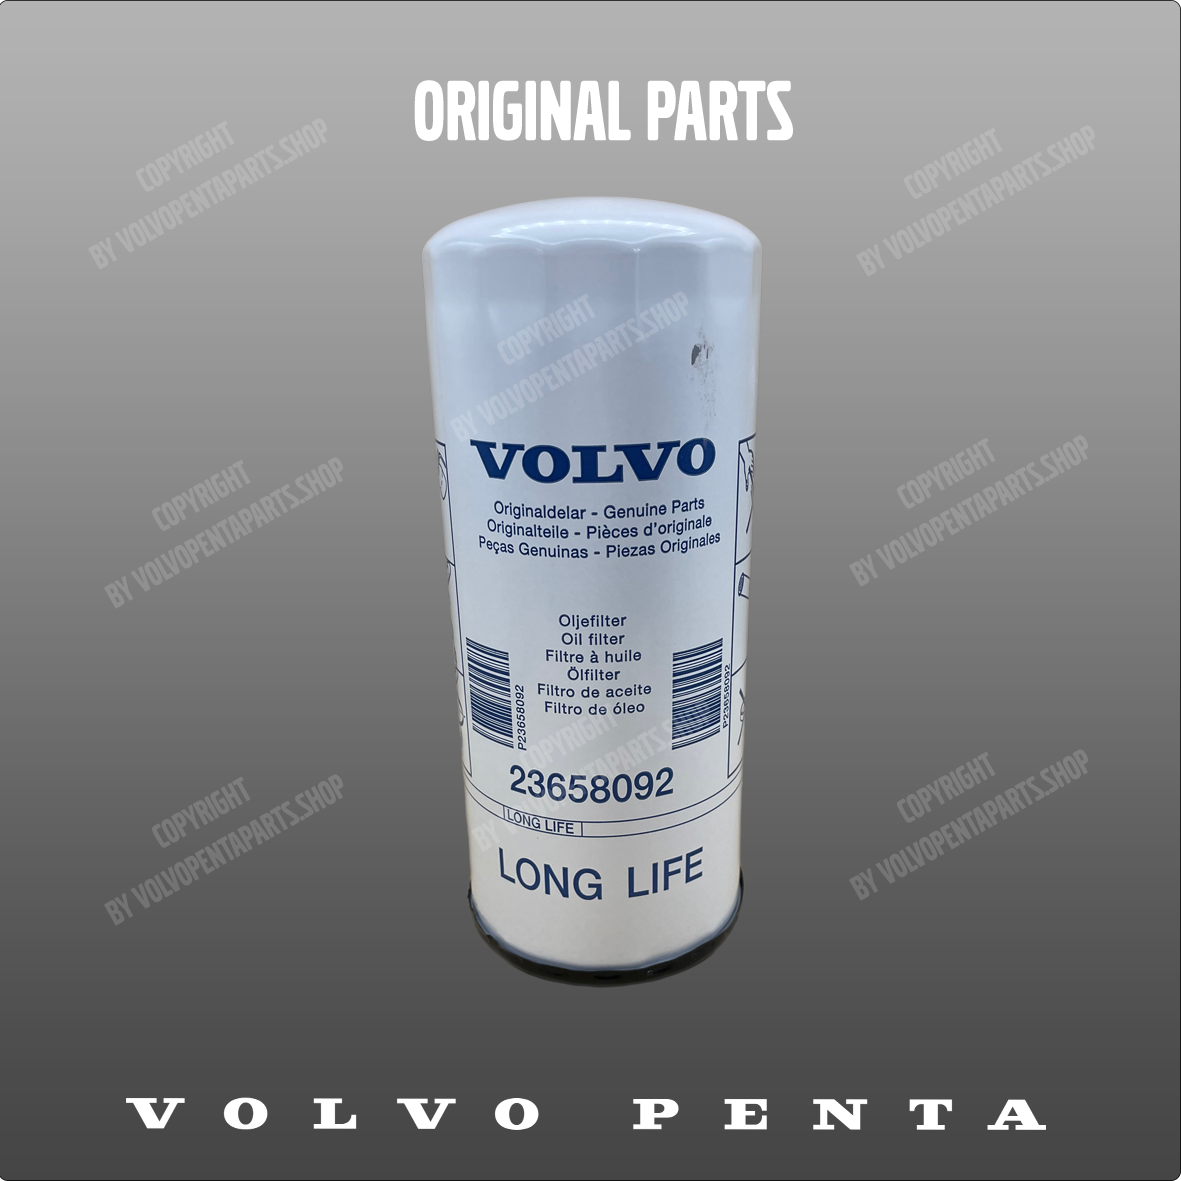 Volvo Penta oil filter 23658092